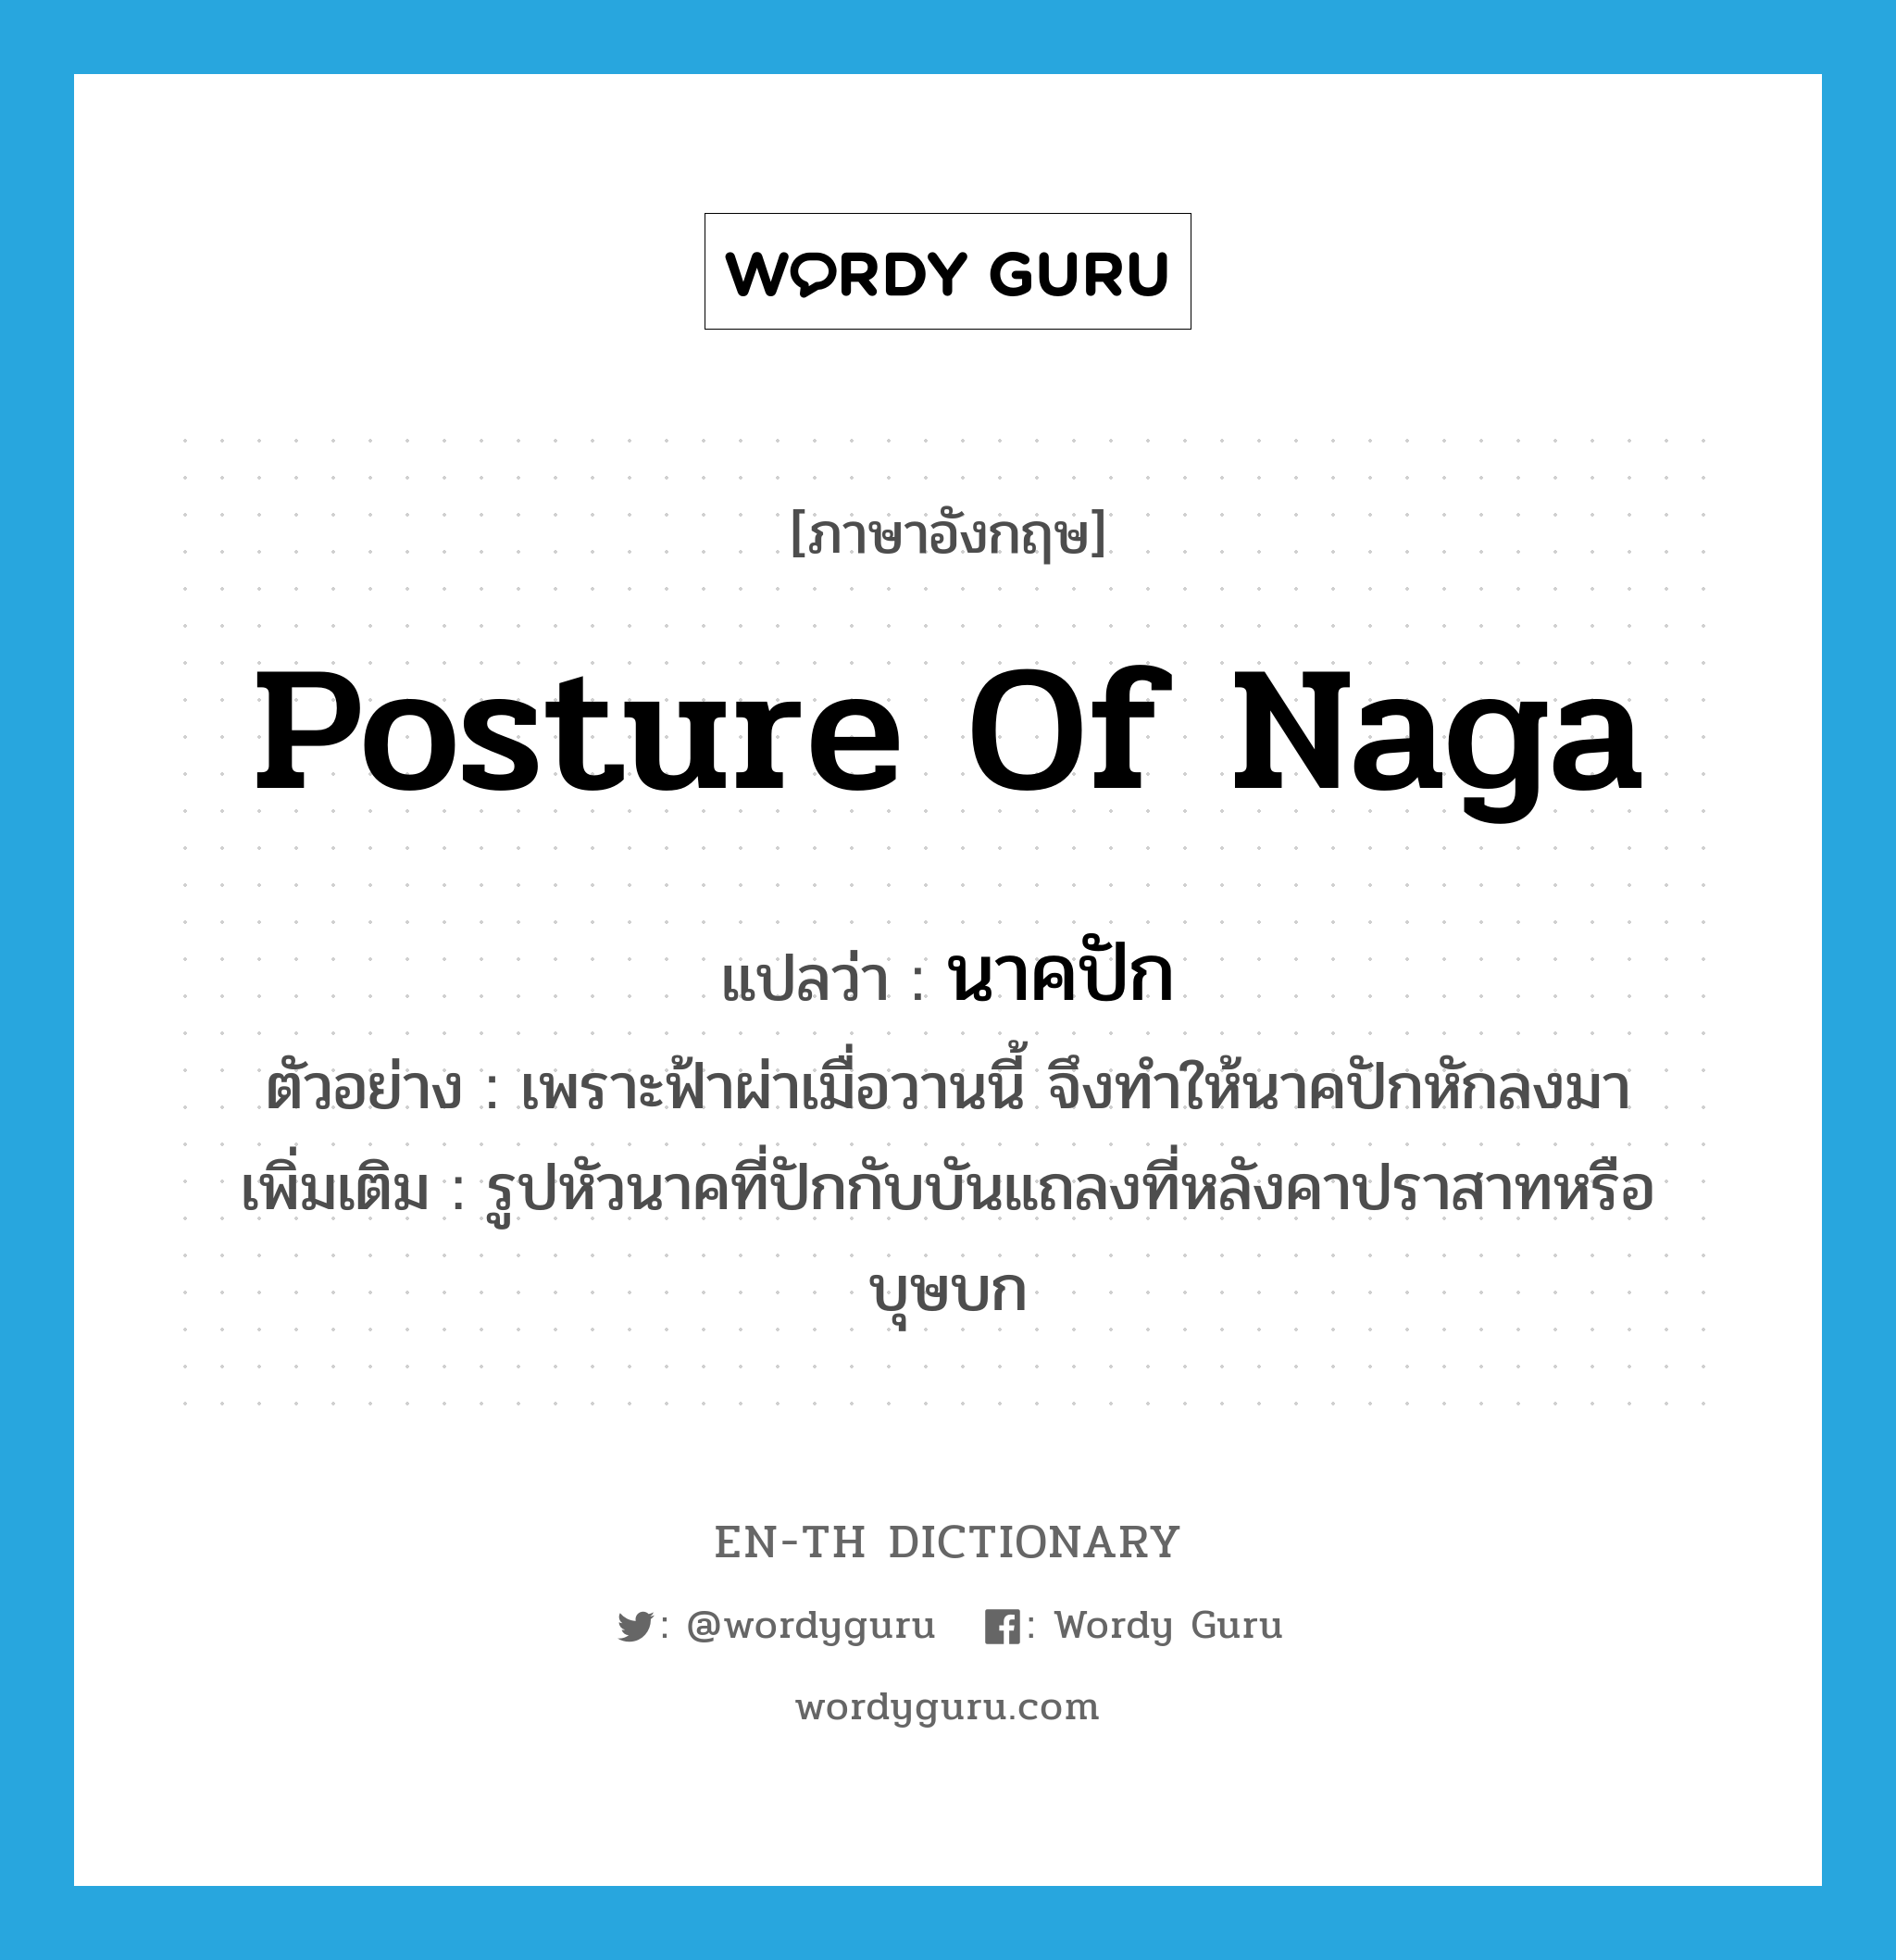 posture of Naga แปลว่า?, คำศัพท์ภาษาอังกฤษ posture of Naga แปลว่า นาคปัก ประเภท N ตัวอย่าง เพราะฟ้าผ่าเมื่อวานนี้ จึงทำให้นาคปักหักลงมา เพิ่มเติม รูปหัวนาคที่ปักกับบันแถลงที่หลังคาปราสาทหรือบุษบก หมวด N